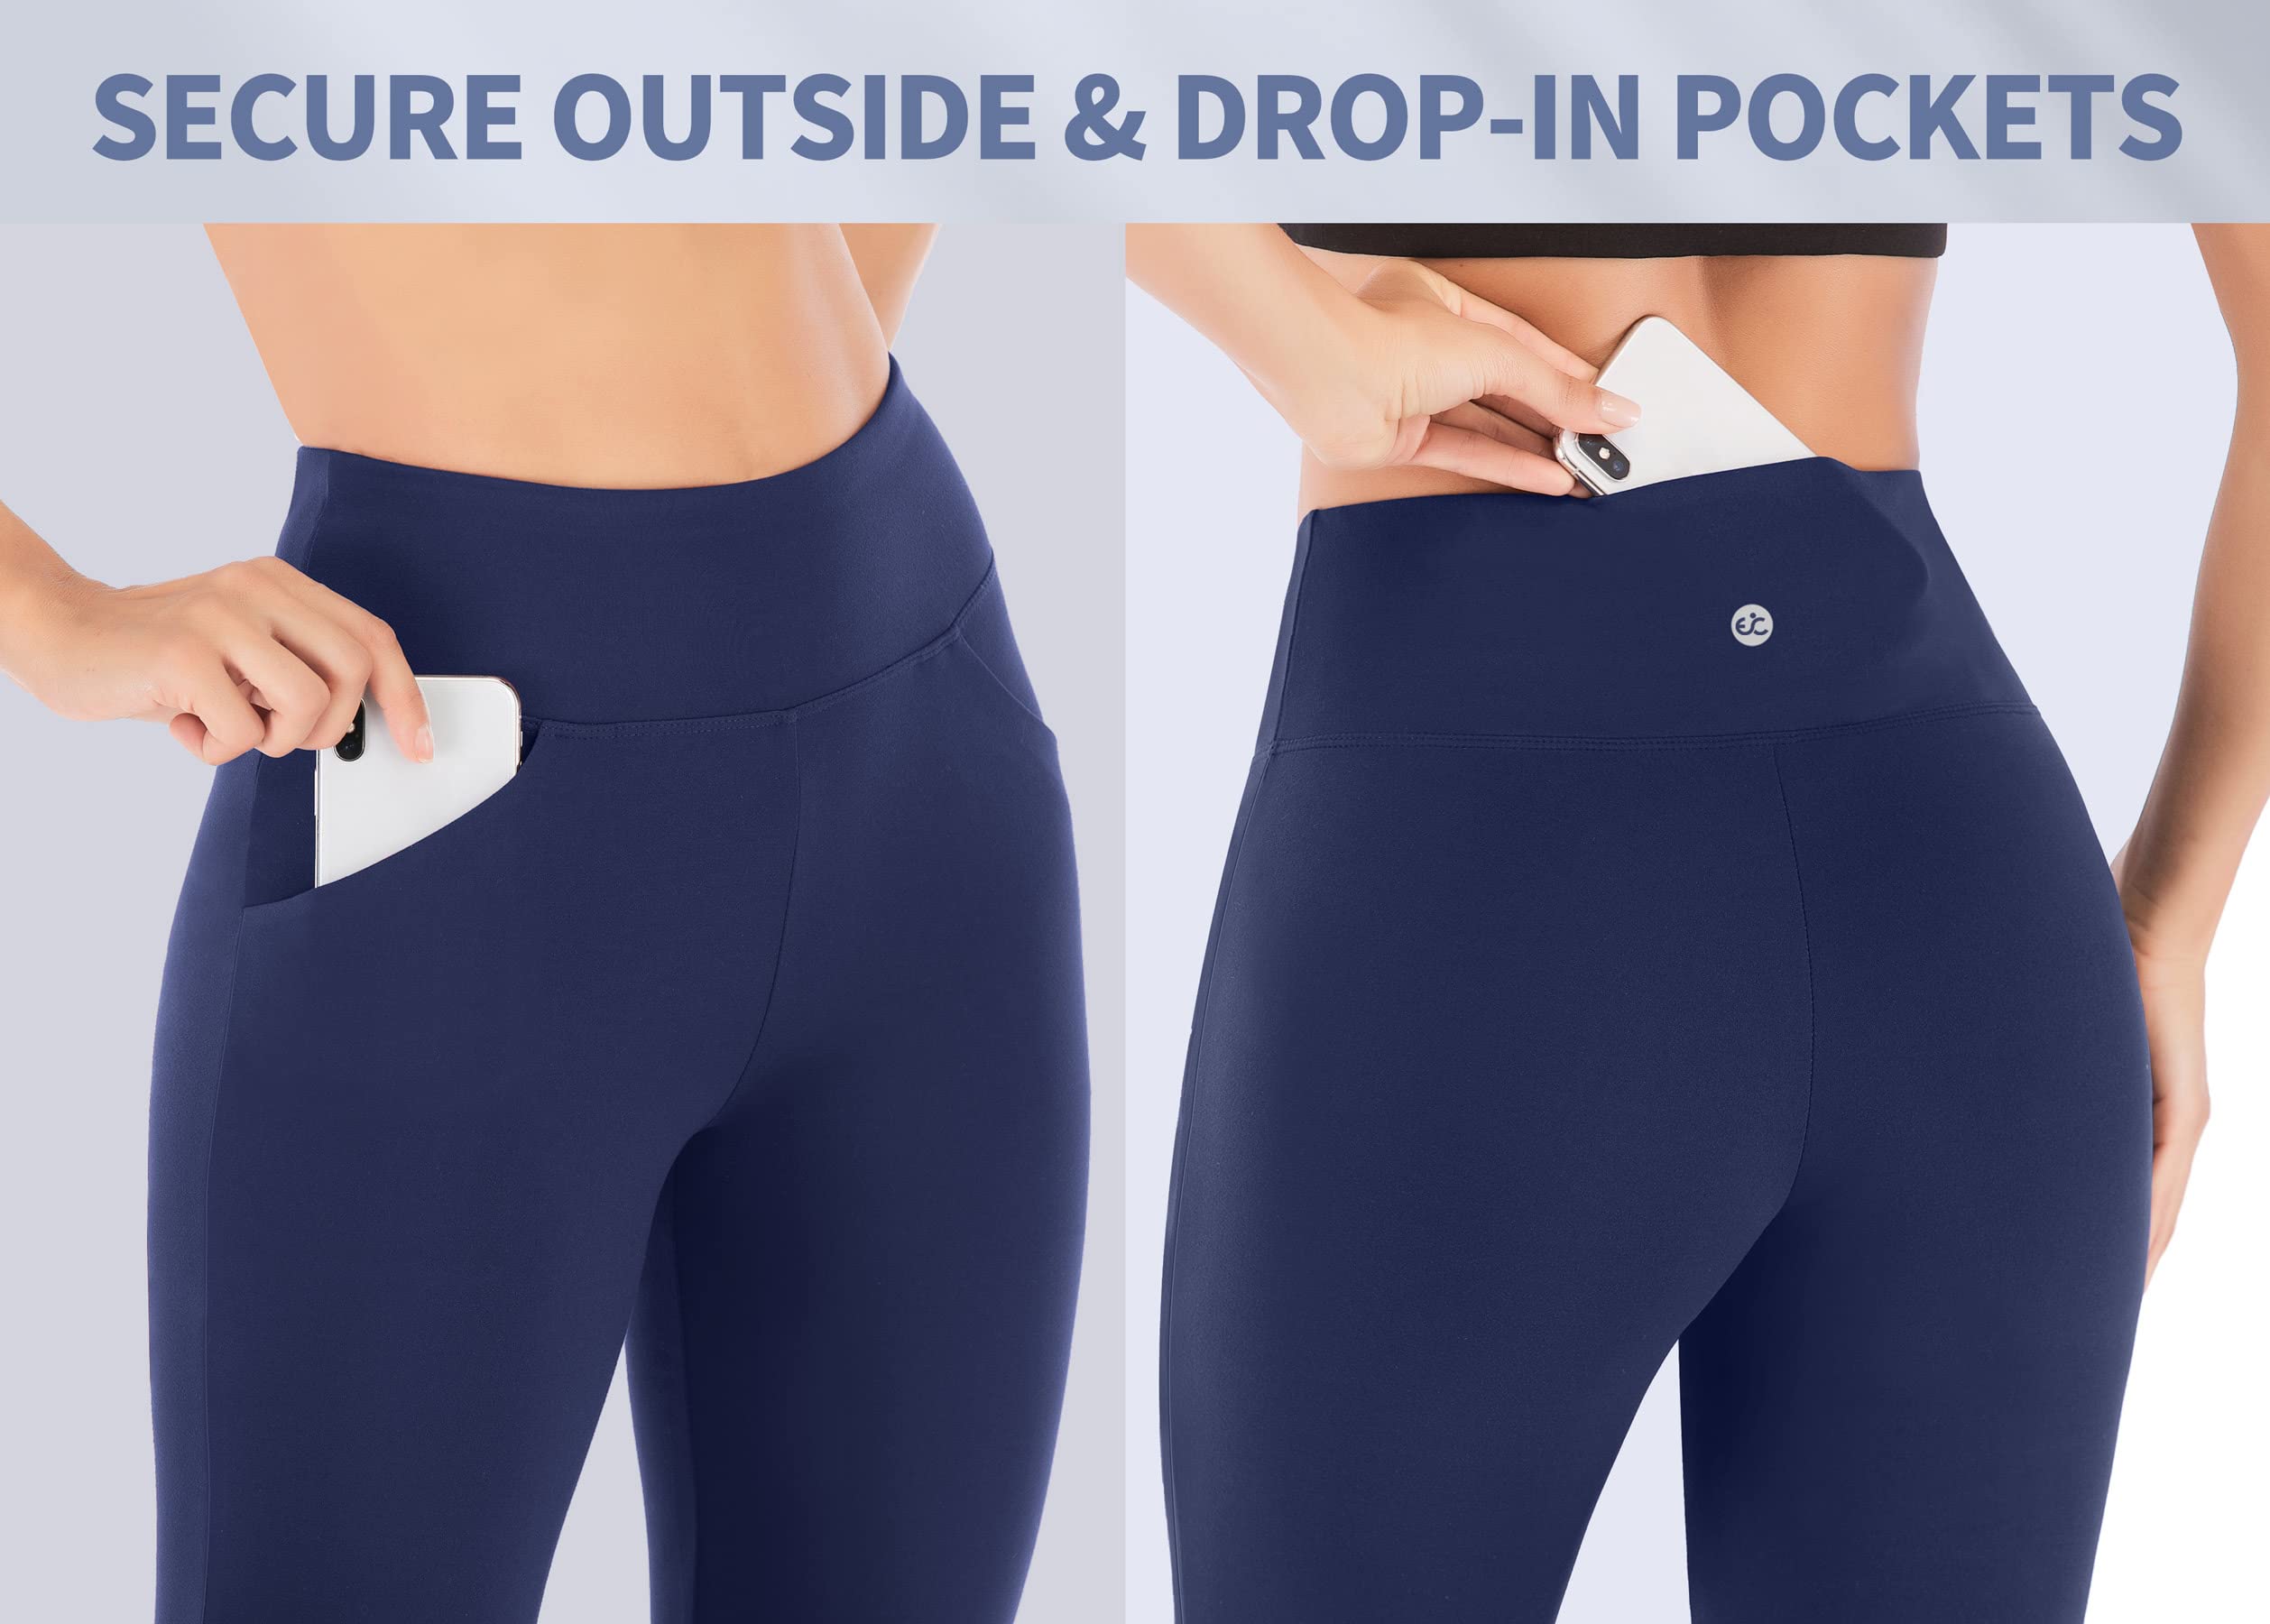 Buy Ewedoos Bootcut Yoga Pants for Women High Waisted Yoga Pants